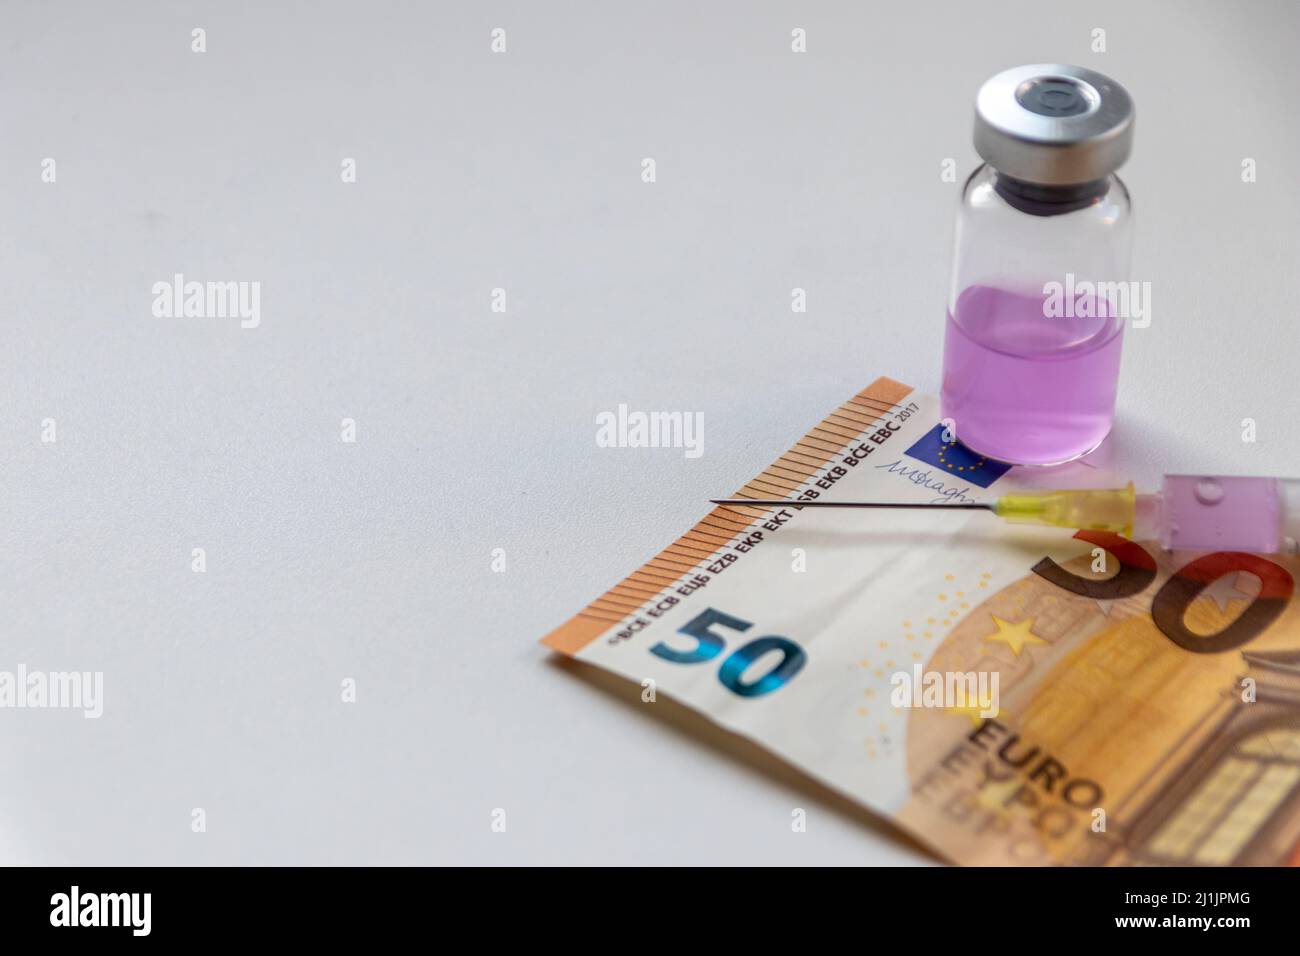 50 Euro Banknote und Injektionsspritze mit rosa medizinischen flüssigen Medizin warten auf einen reichen Patienten, um seine Krankheiten zu heilen, wenn viel Geld für die Gesundheit bezahlt Stockfoto